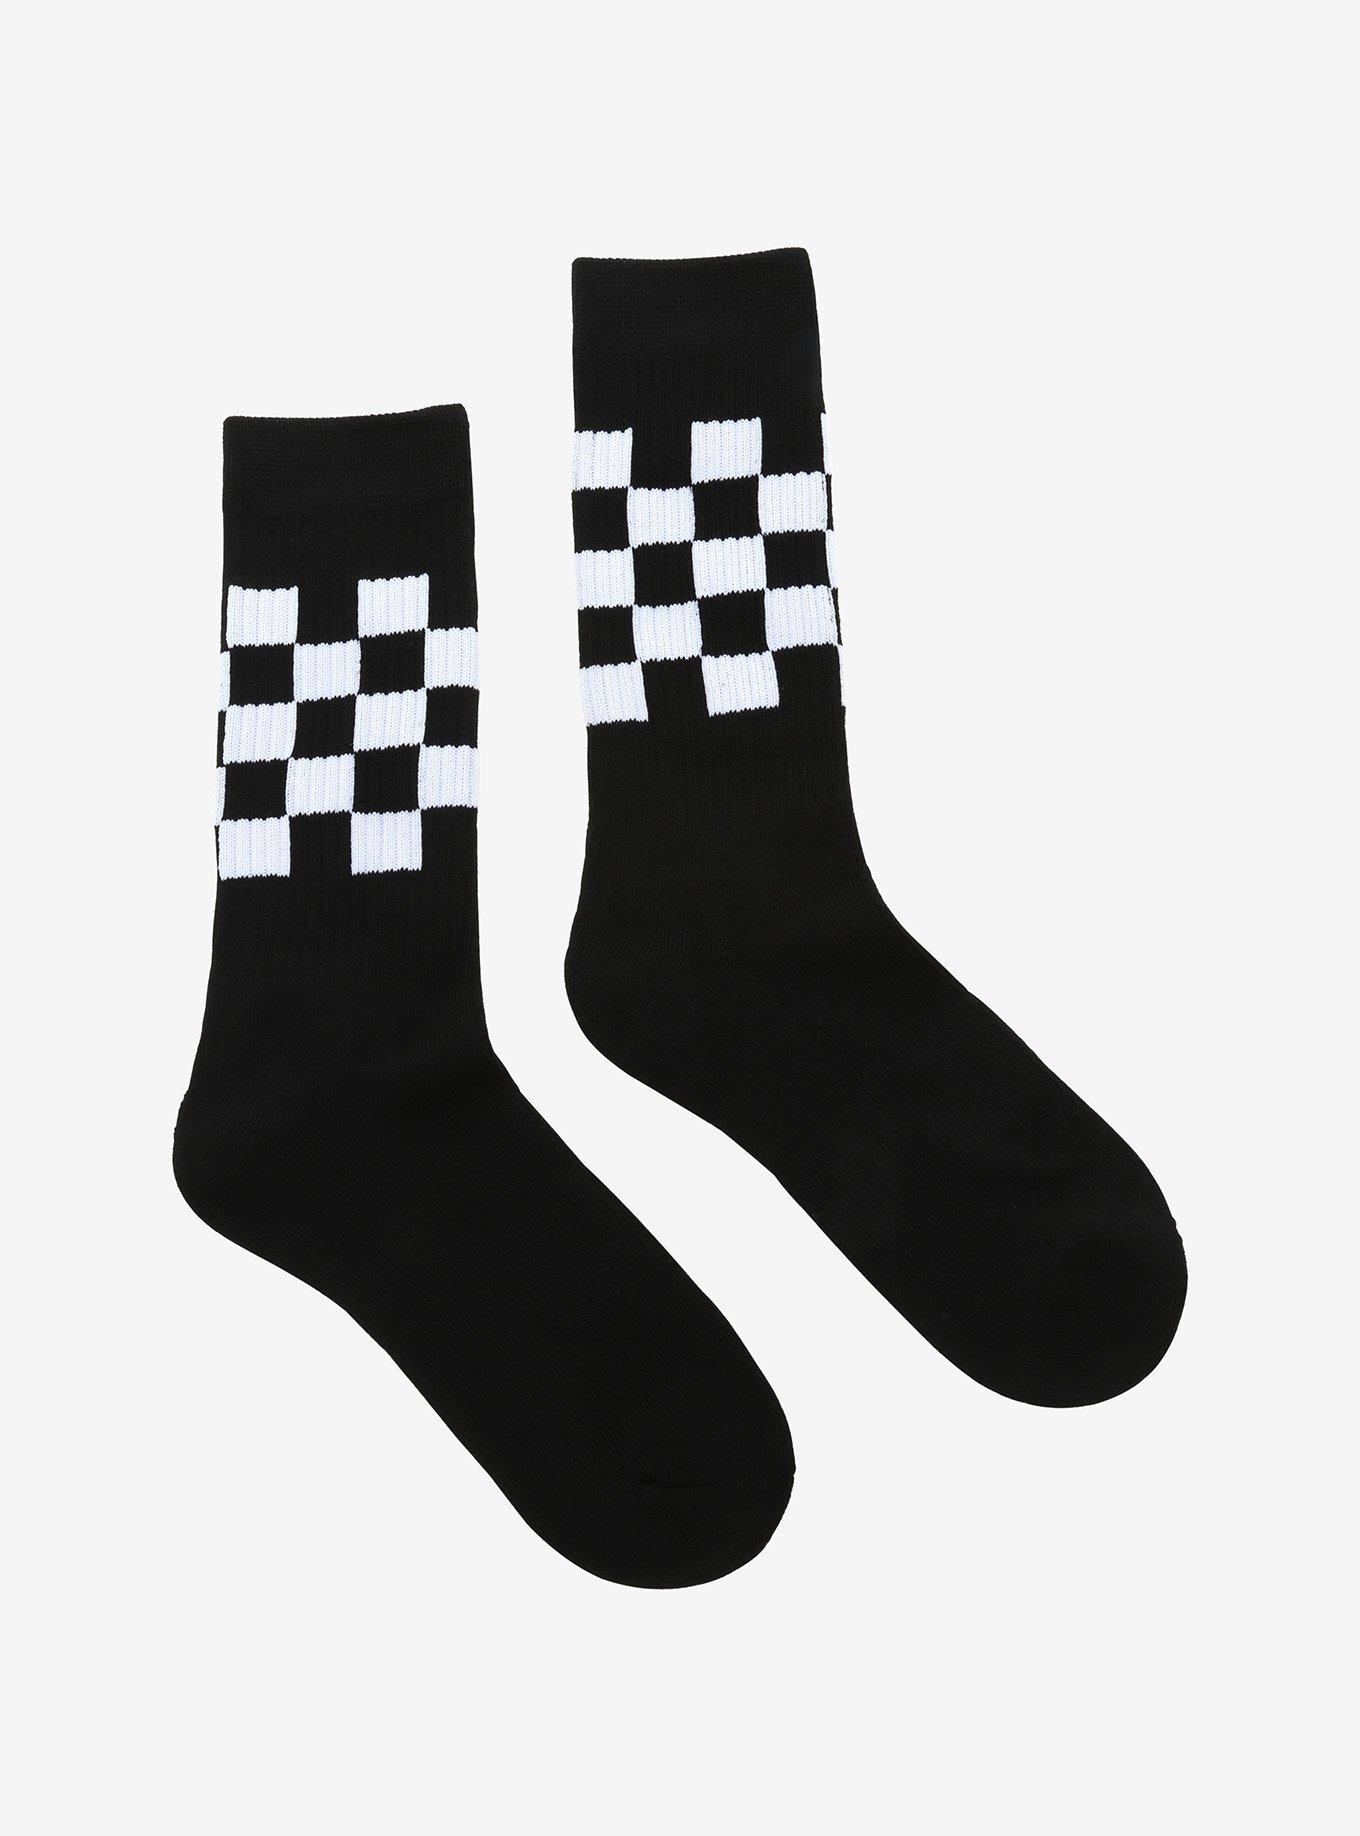 Black & White Checkered Crew Socks, , alternate